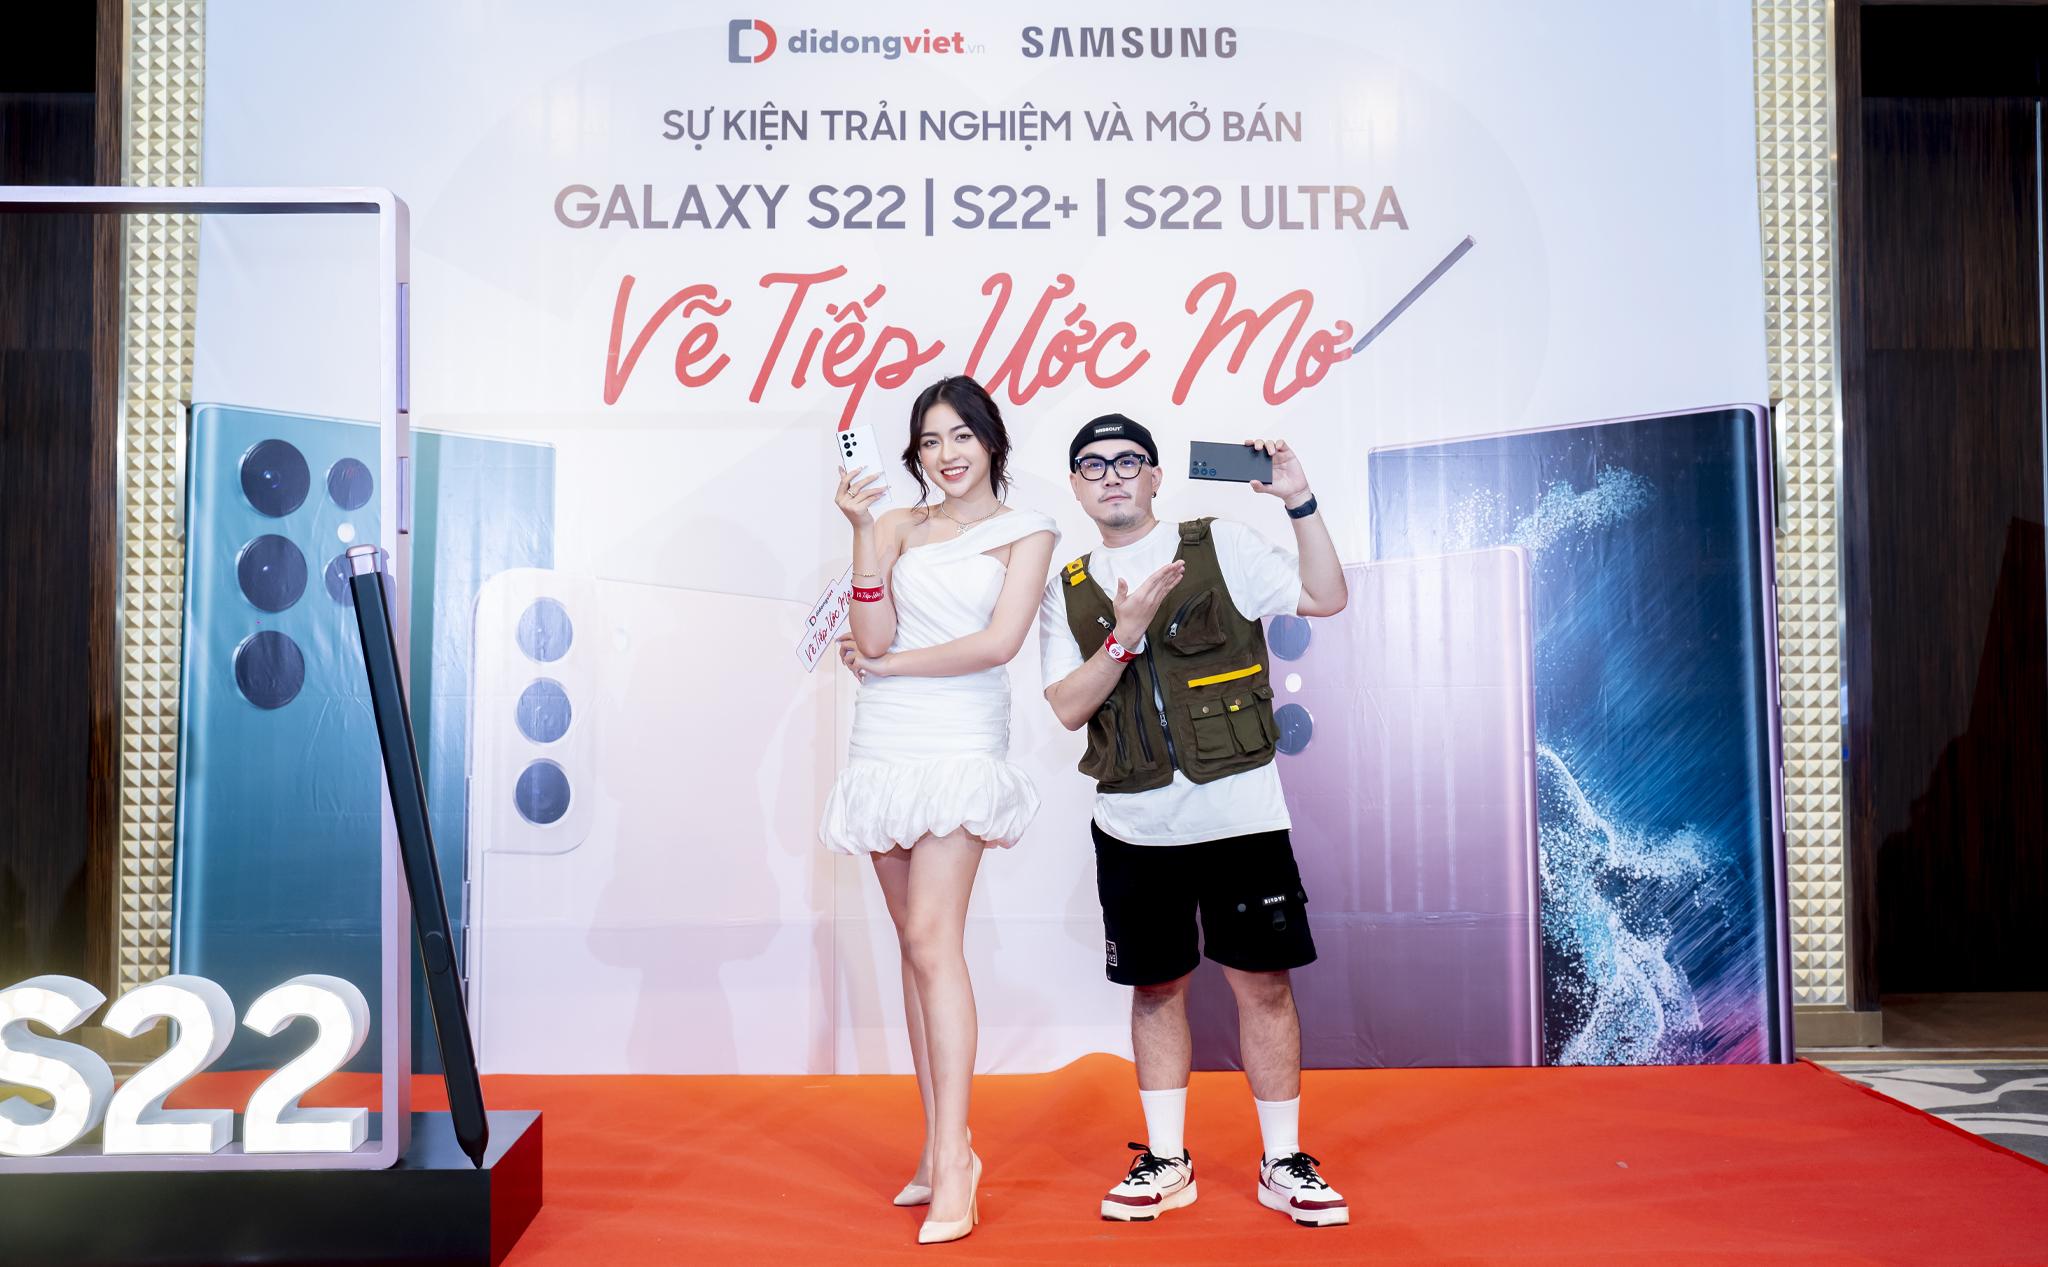 Samsung Galaxy S22 series đạt doanh số khủng ngay trong ngày đầu tiên mở bán